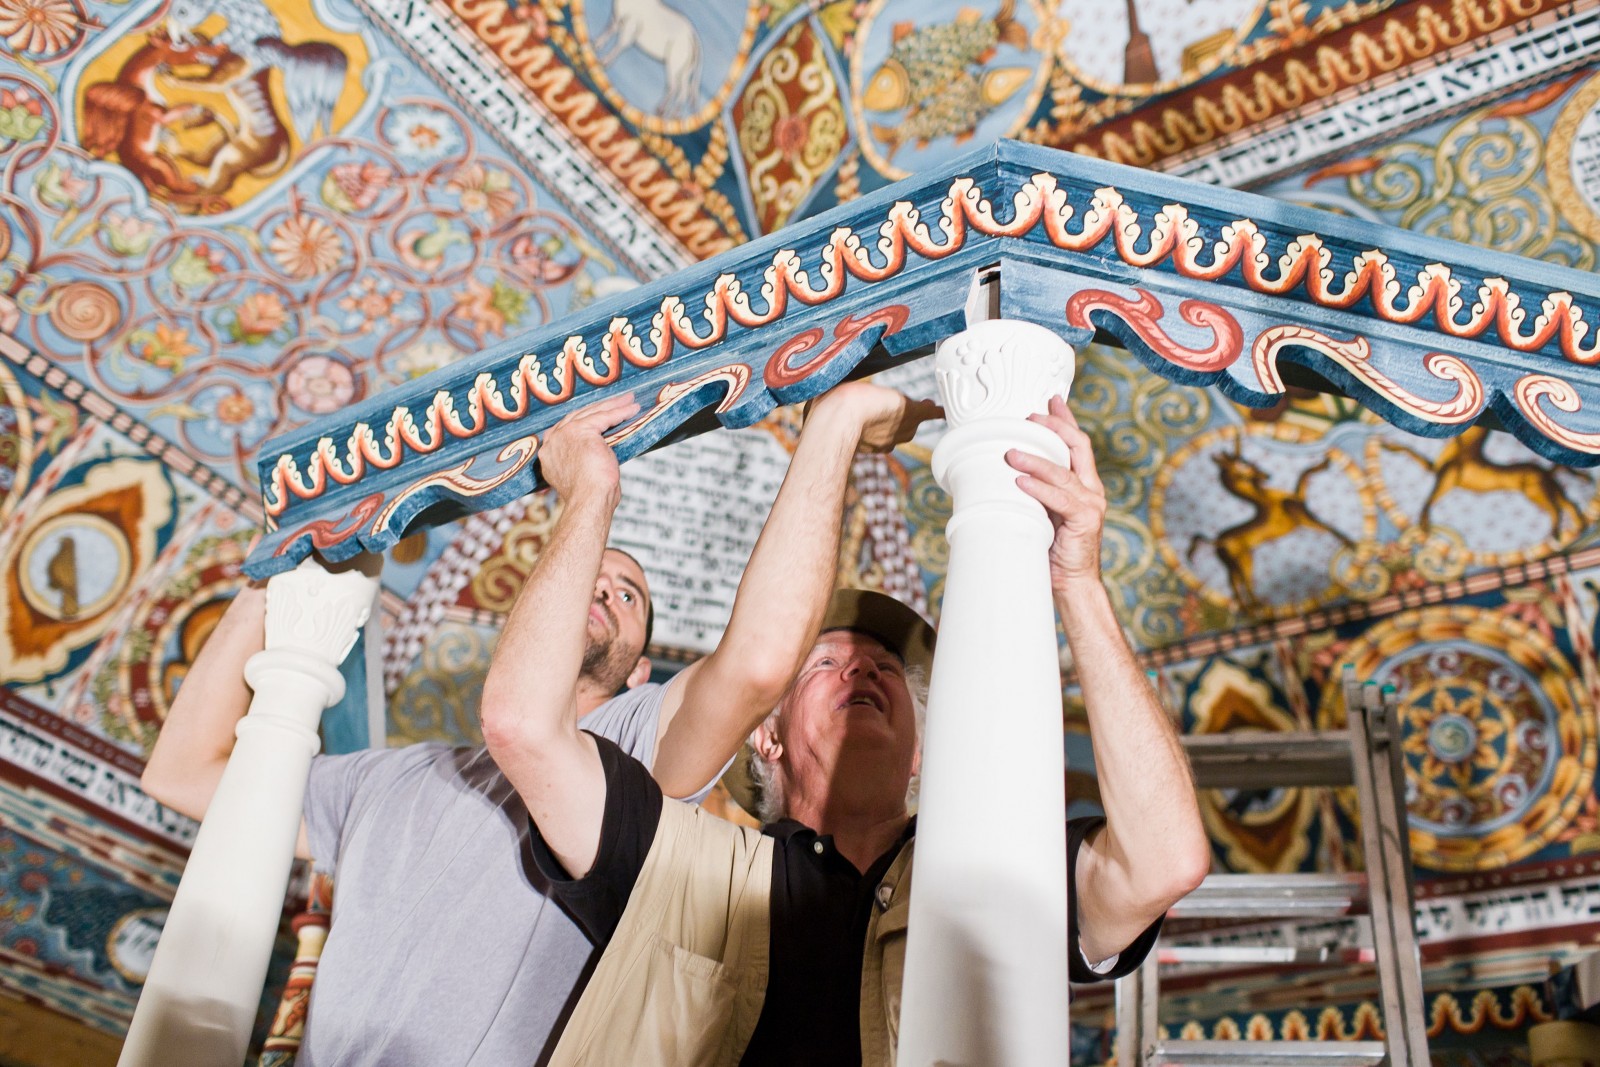 Mężczyźni mocują elementy bimy, która wchodzi w skład zrekonstruowanej synagogi w Muzeum POLIN.